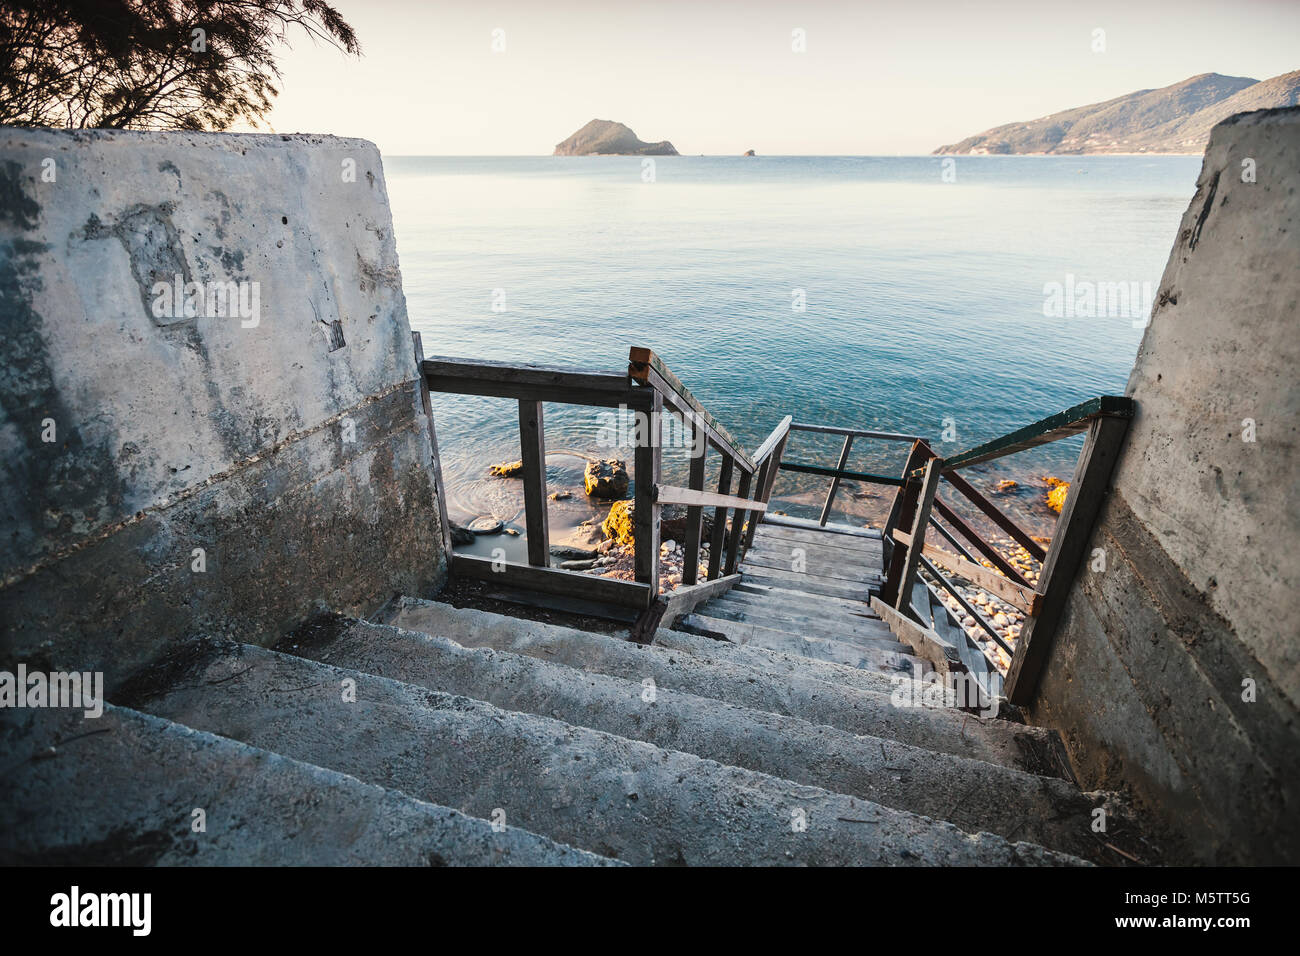 Vue en perspective des vieux escaliers descendant jusqu'à la côte de la mer, l'île de Zakynthos, Grèce Banque D'Images